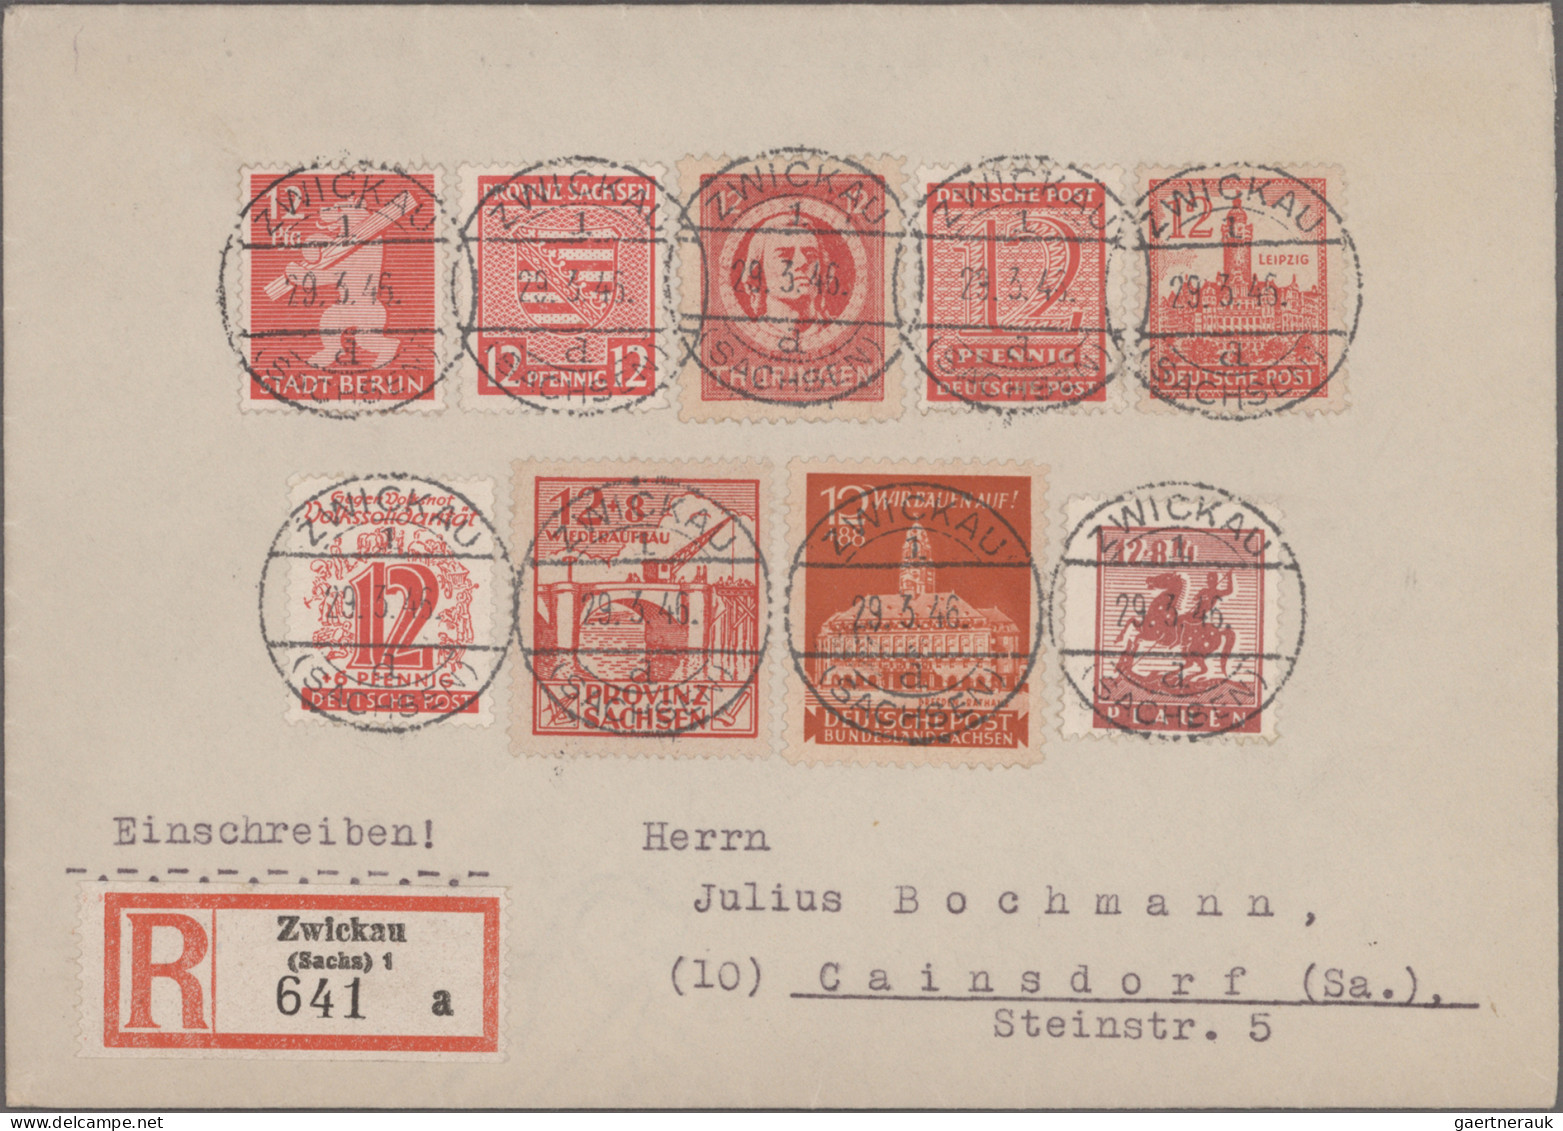 Nachlässe: DEUTSCHLAND 1945-1950, Nachlass-Briefposten mit Briefen, Karten und G